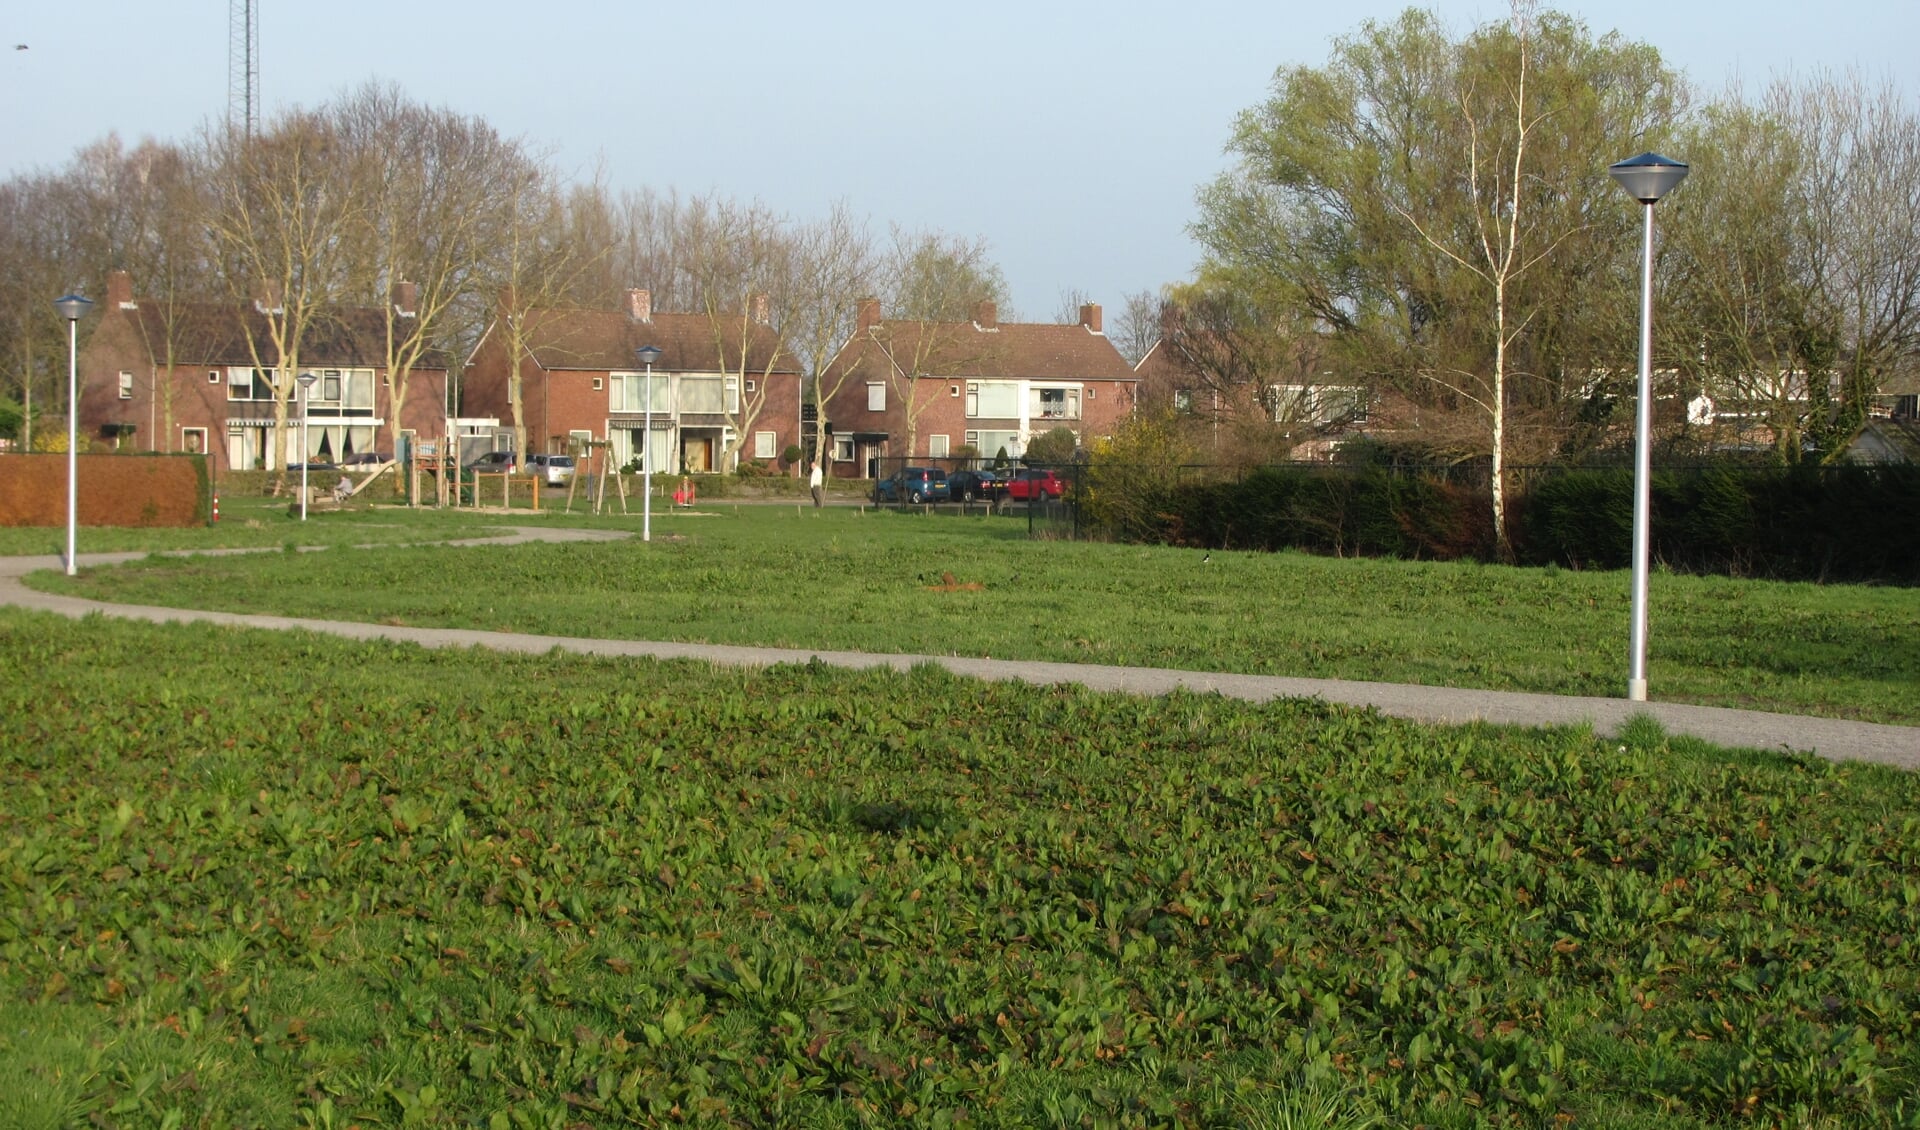 Momenteel is het voormalige terrein van Brabant Chemie in gebruik als groenstrook. Er kan gewandeld en gerecreëerd worden. Ook kunnen er kleine evenementen worden gehouden. Buurtvereniging 't Pleintje fungeert als beheerder. 